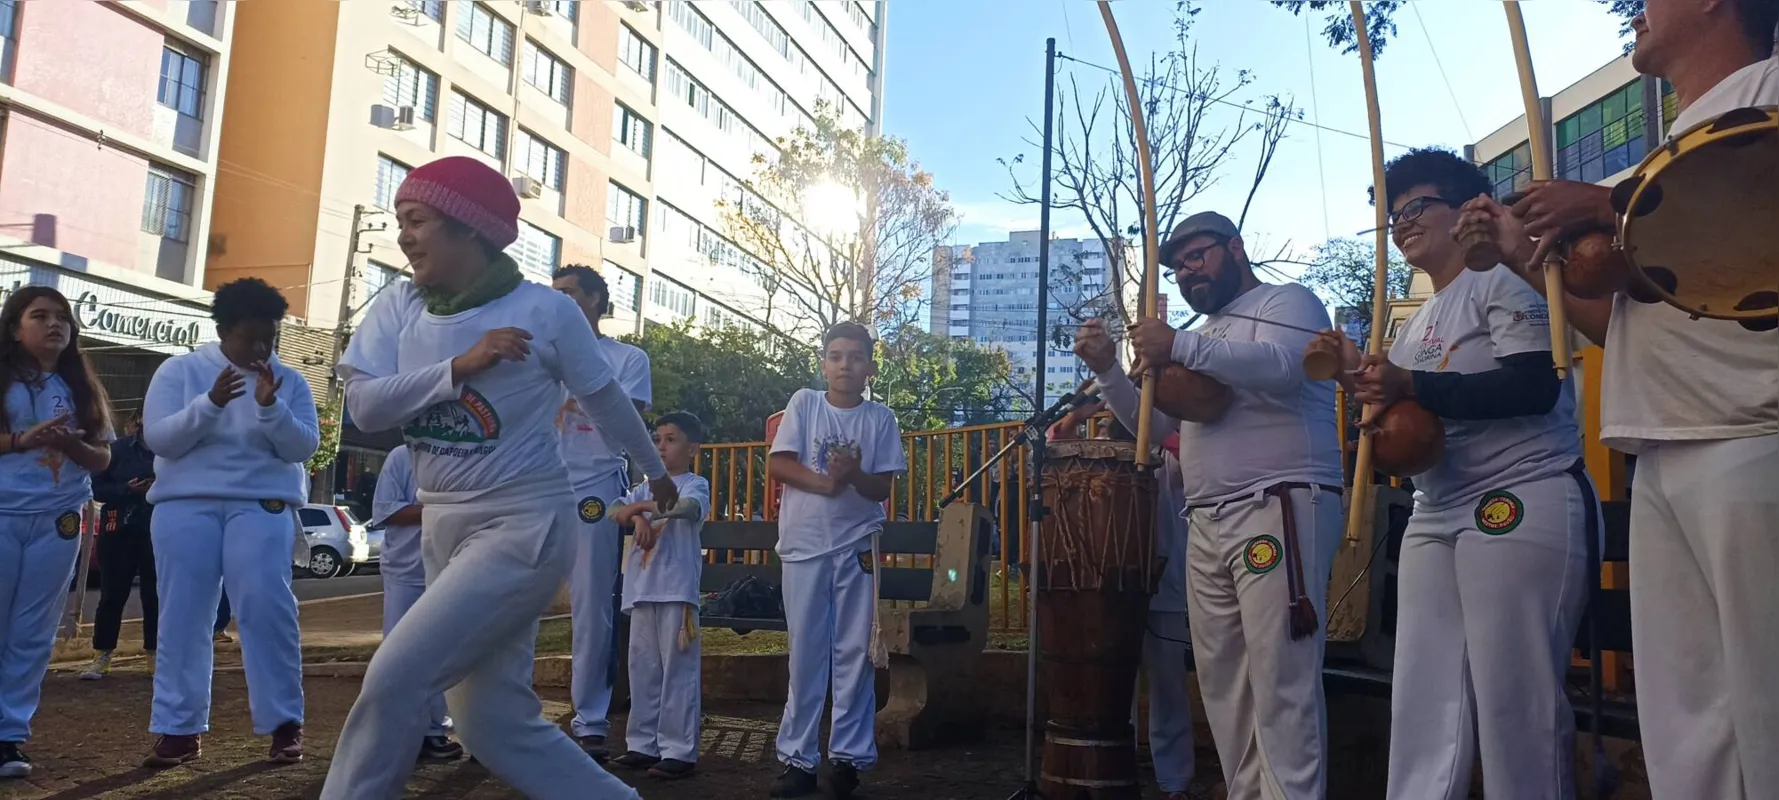 Evento no Centro Histórico de Londrina contou com capoeira e outras atividades culturais